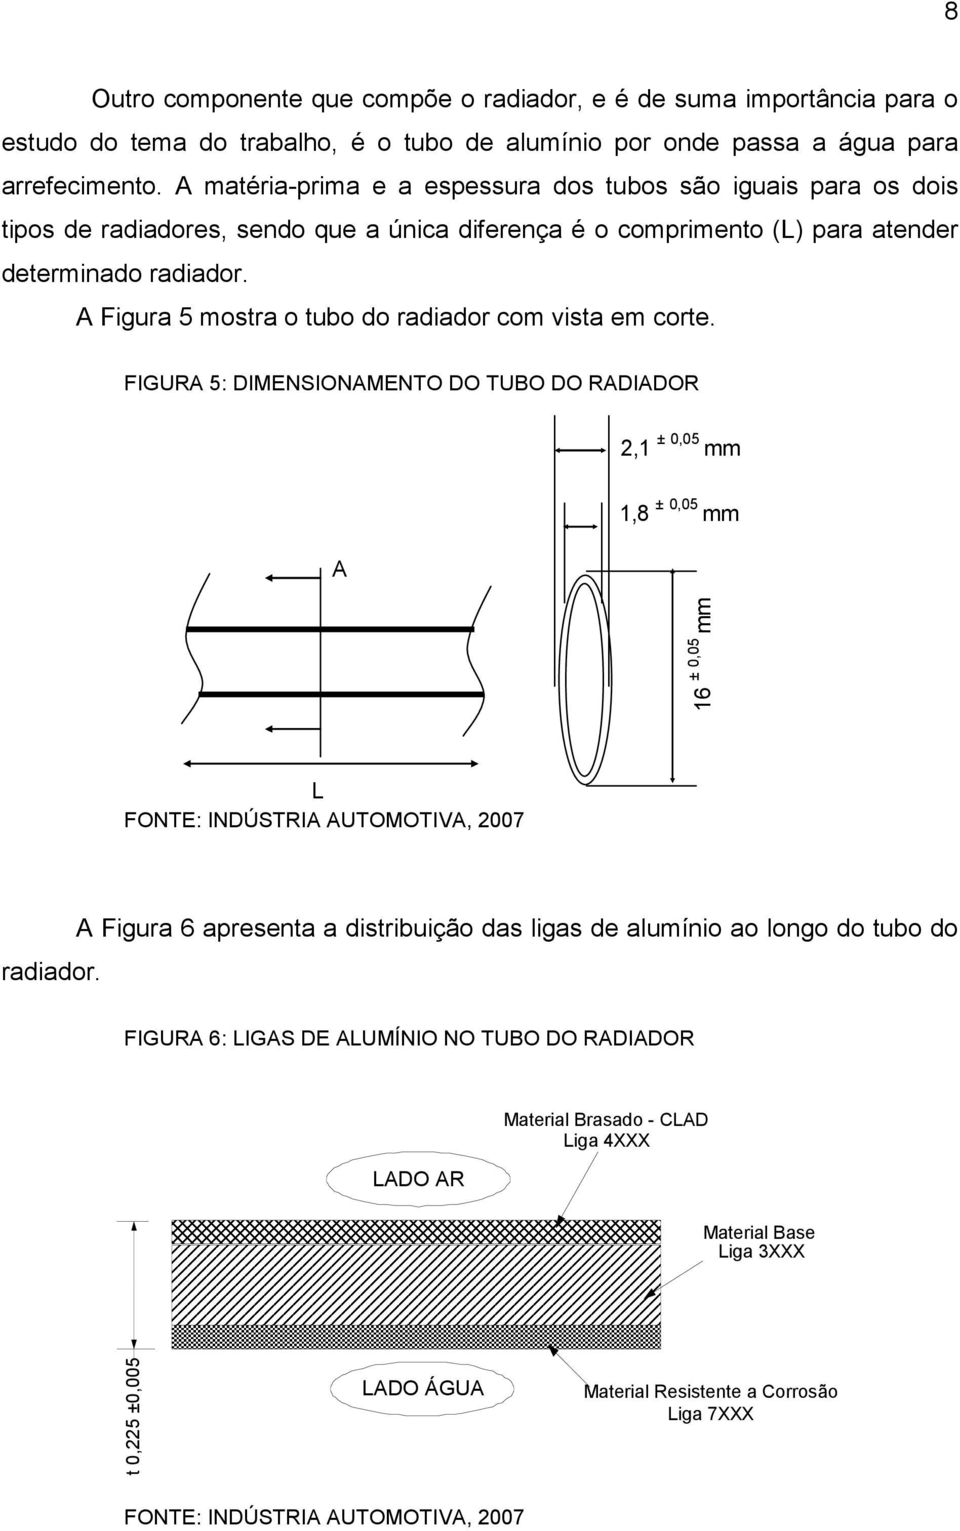 A Figura 5 mostra o tubo do radiador com vista em corte. FIGURA 5: DIMENSIONAMENTO DO TUBO DO RADIADOR 2,1 ± 0,05 mm A 1,8 ± 0,05 mm 16 ± 0,05 mm L FONTE: INDÚSTRIA AUTOMOTIVA, 2007 radiador.